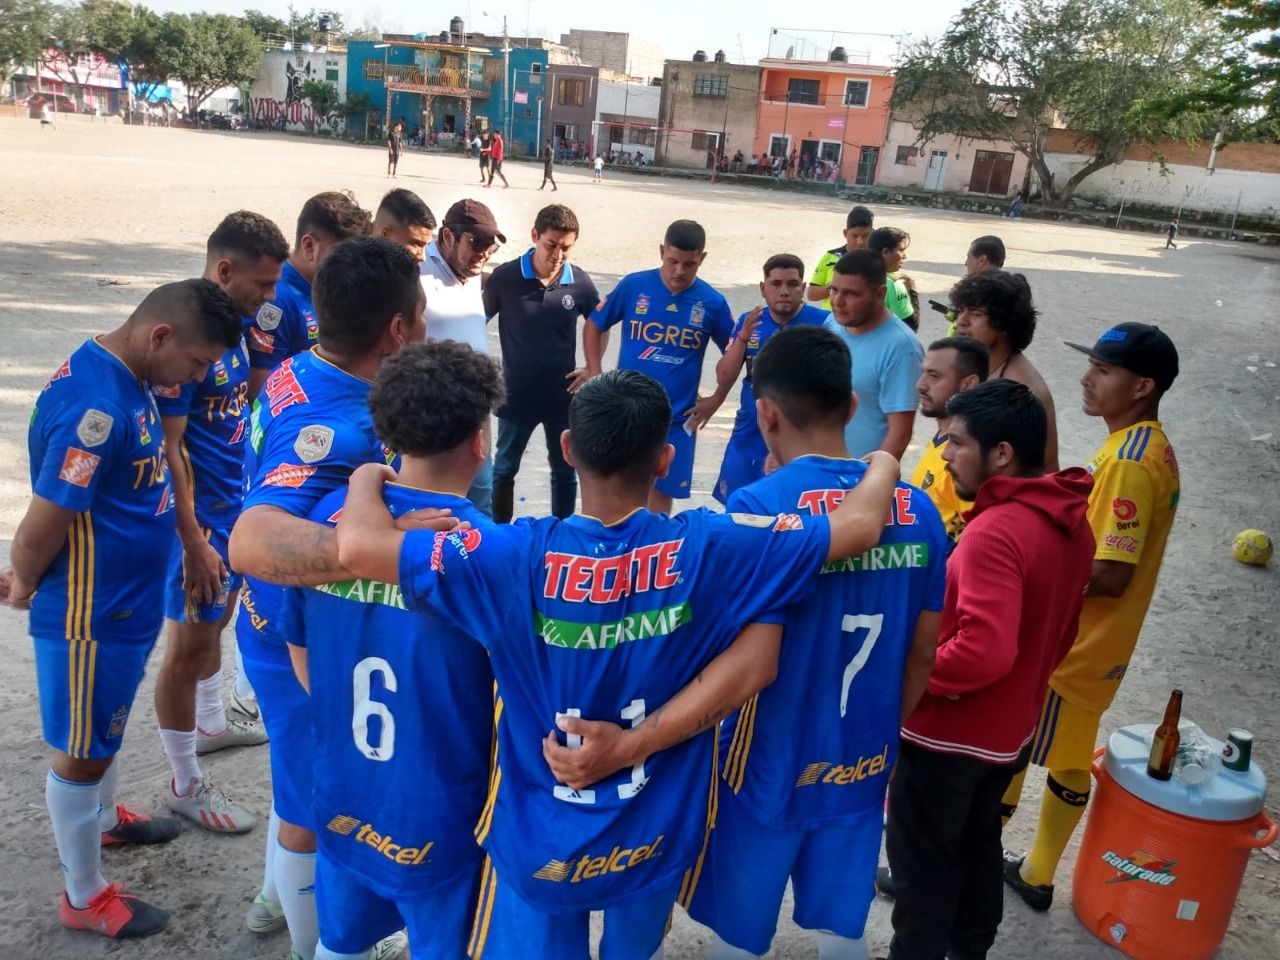 Gran final de fútbol en la indígena de Mezquitlan, al rescate de la juventud